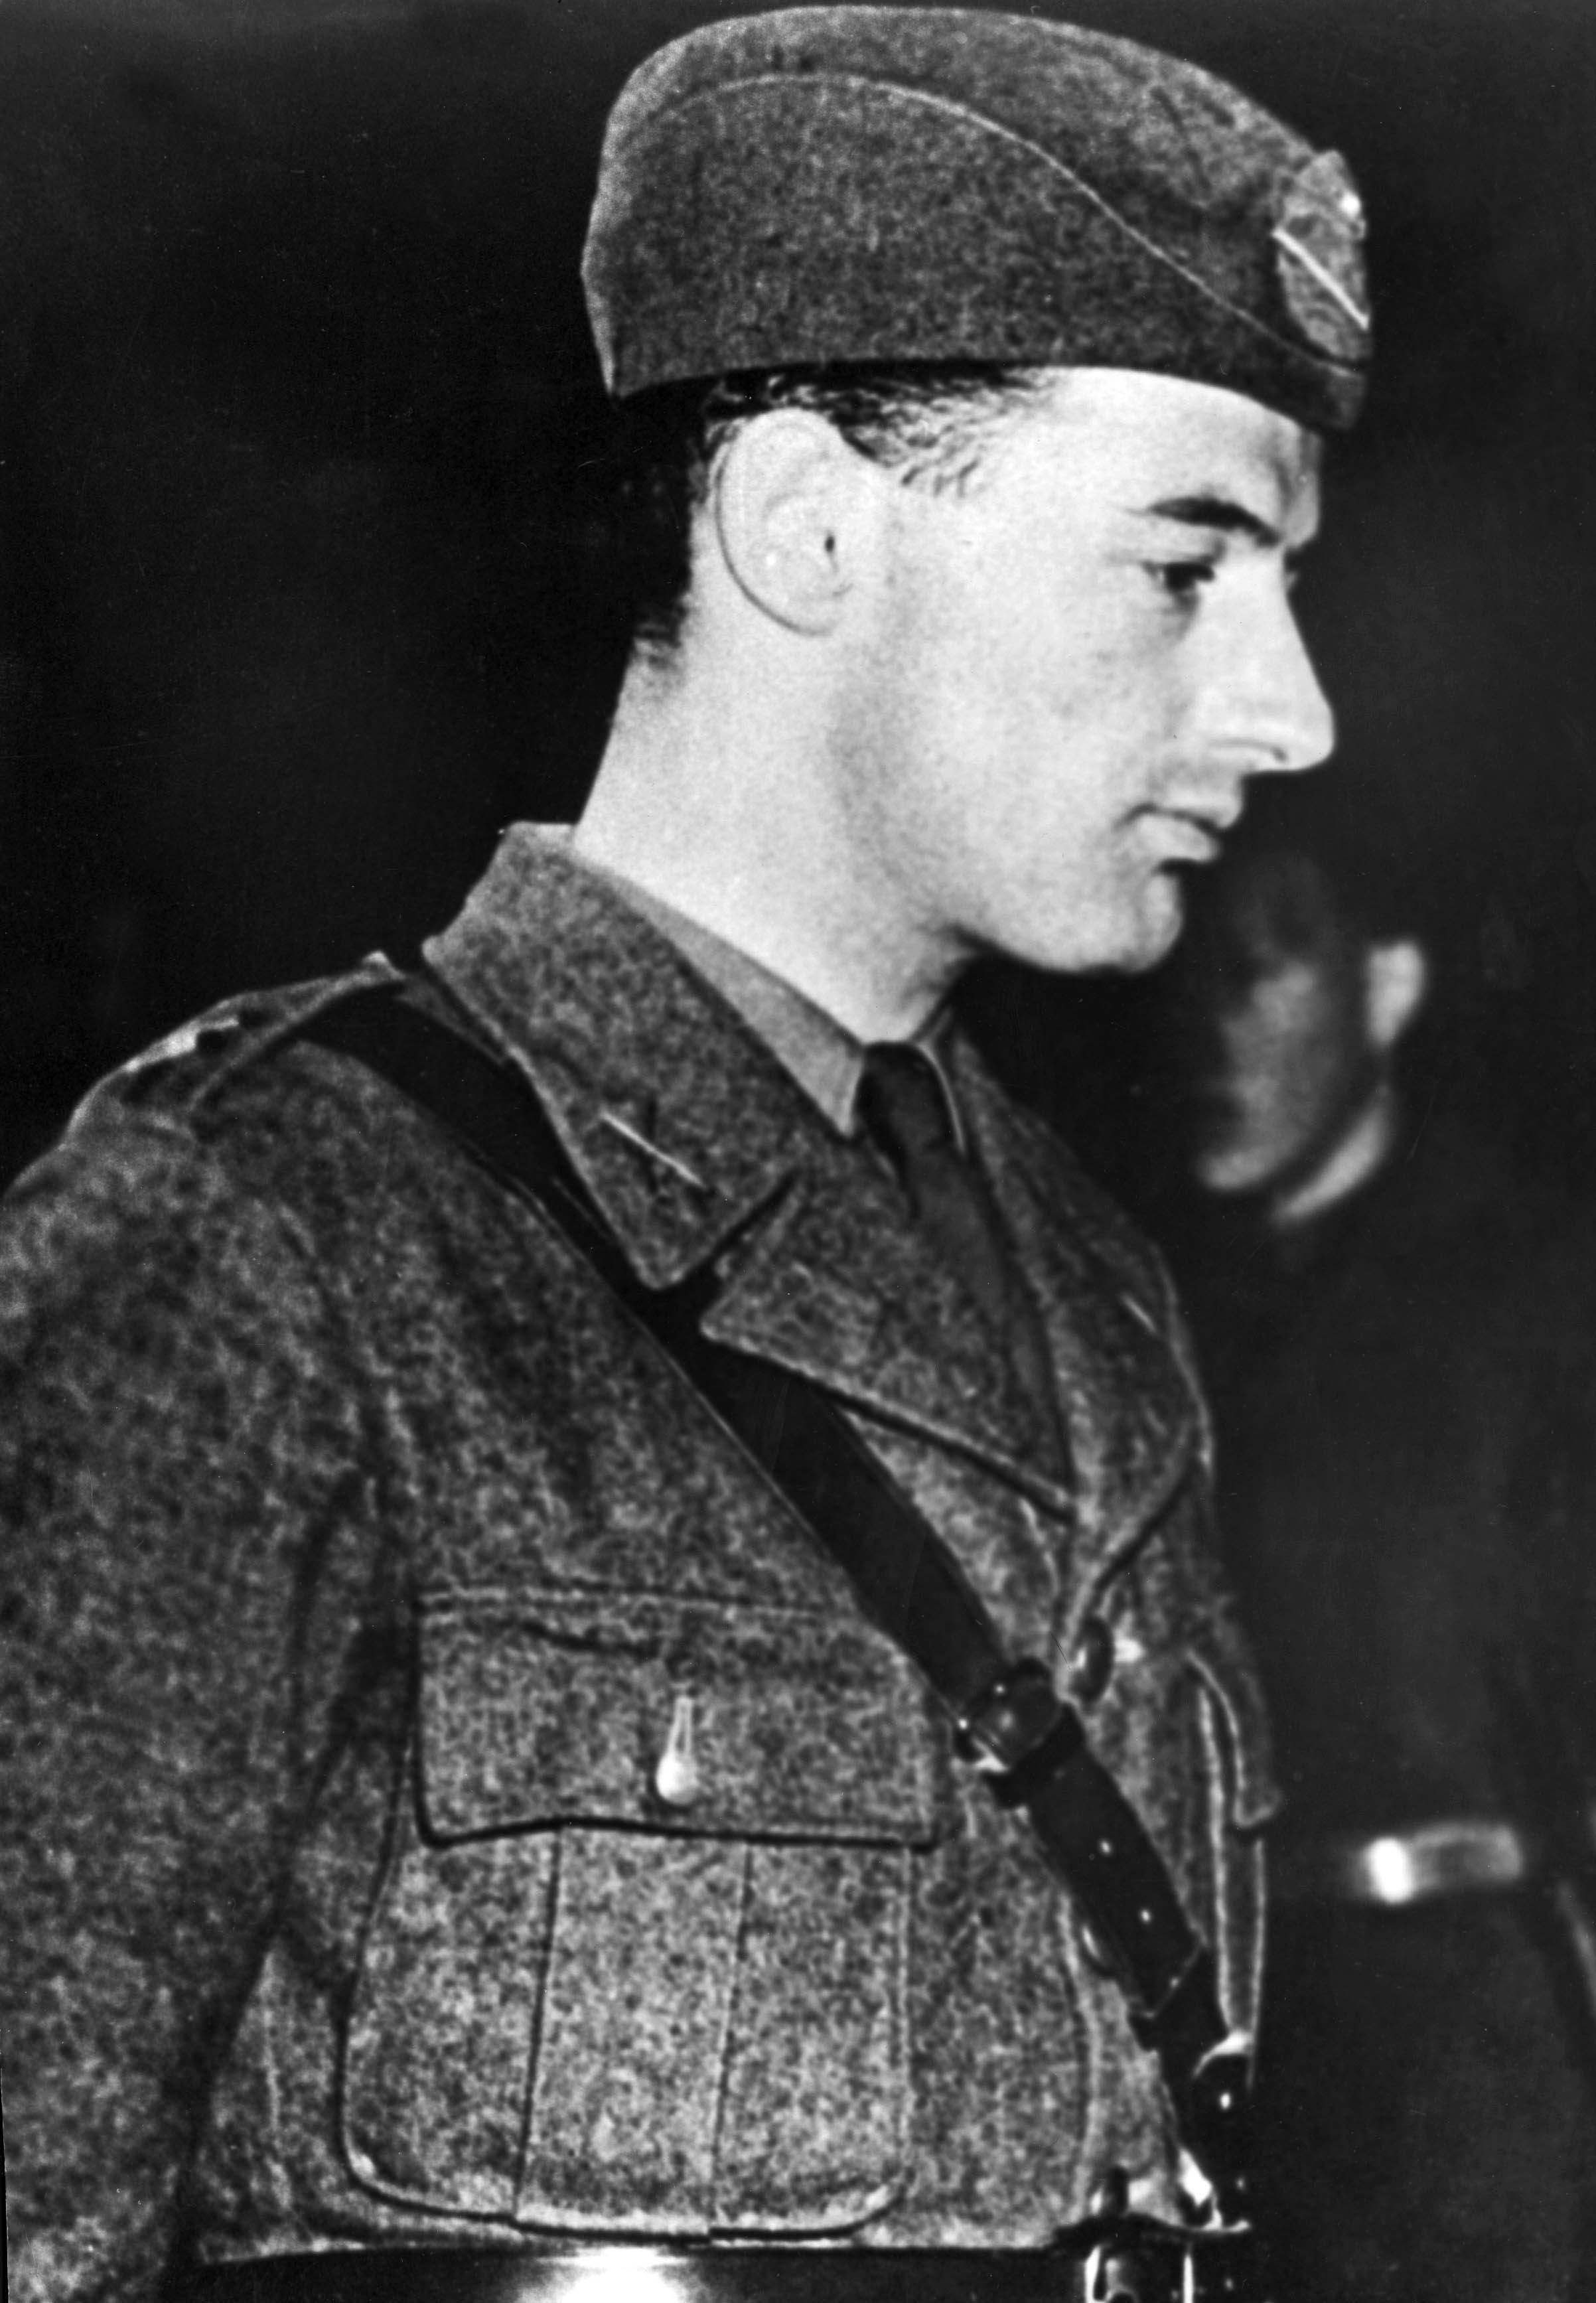 Hans hjältedåd i kampen för att rädda judar undan nazisterna kan ha skonat så många som 100 000 människoliv. 